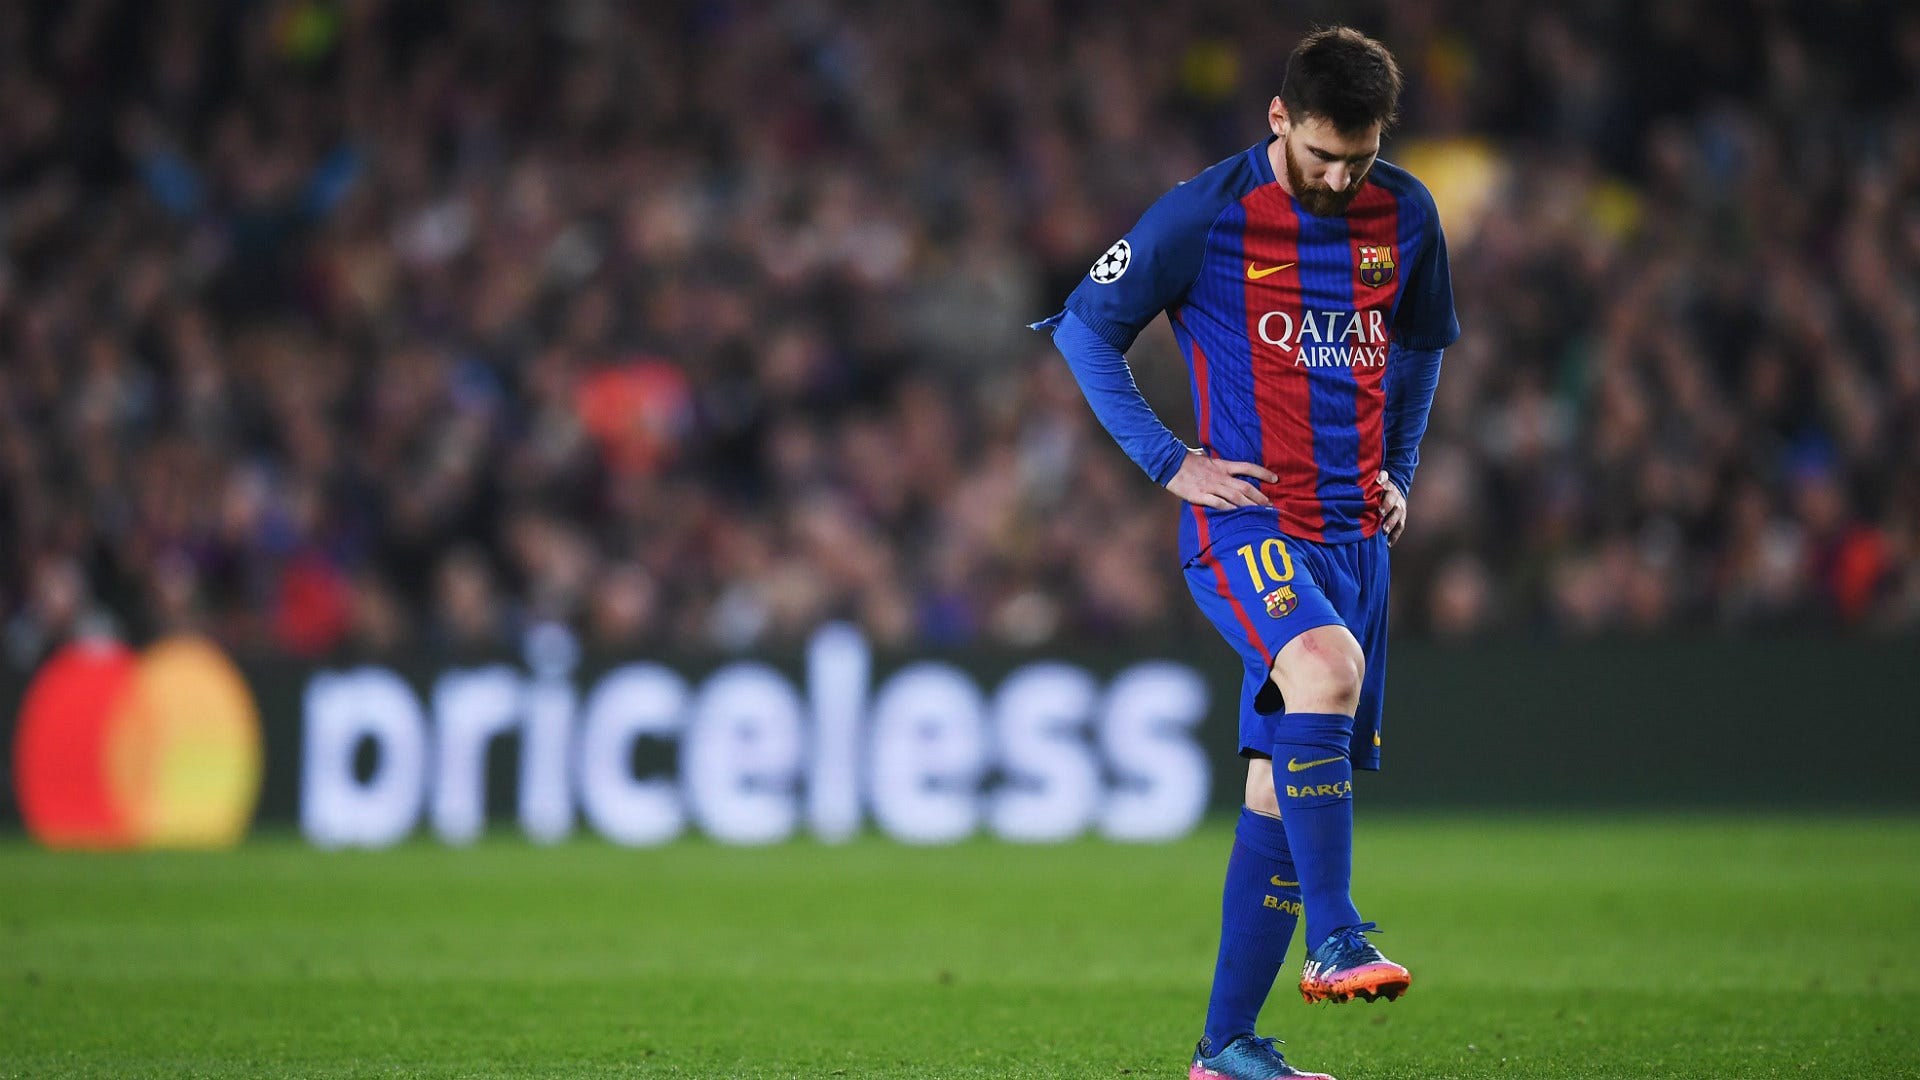 HLV Domenech: Messi đã sang sườn dốc bên kia của sự nghiệp | Goal ...